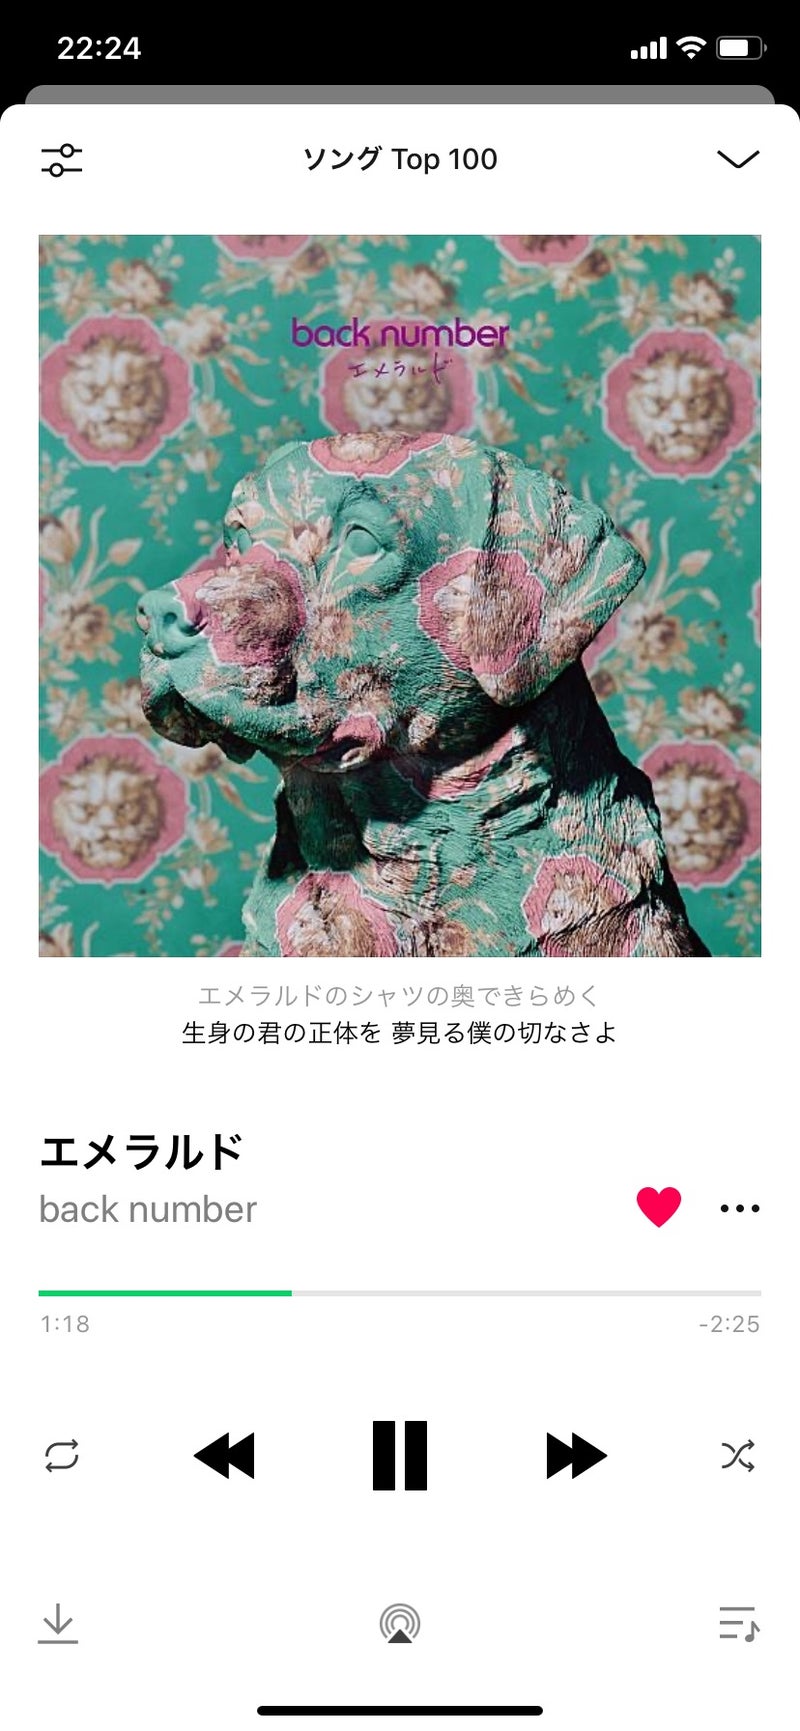 Backnumber エメラルド back number、新曲「エメラルド」を10月12日に配信限定リリース